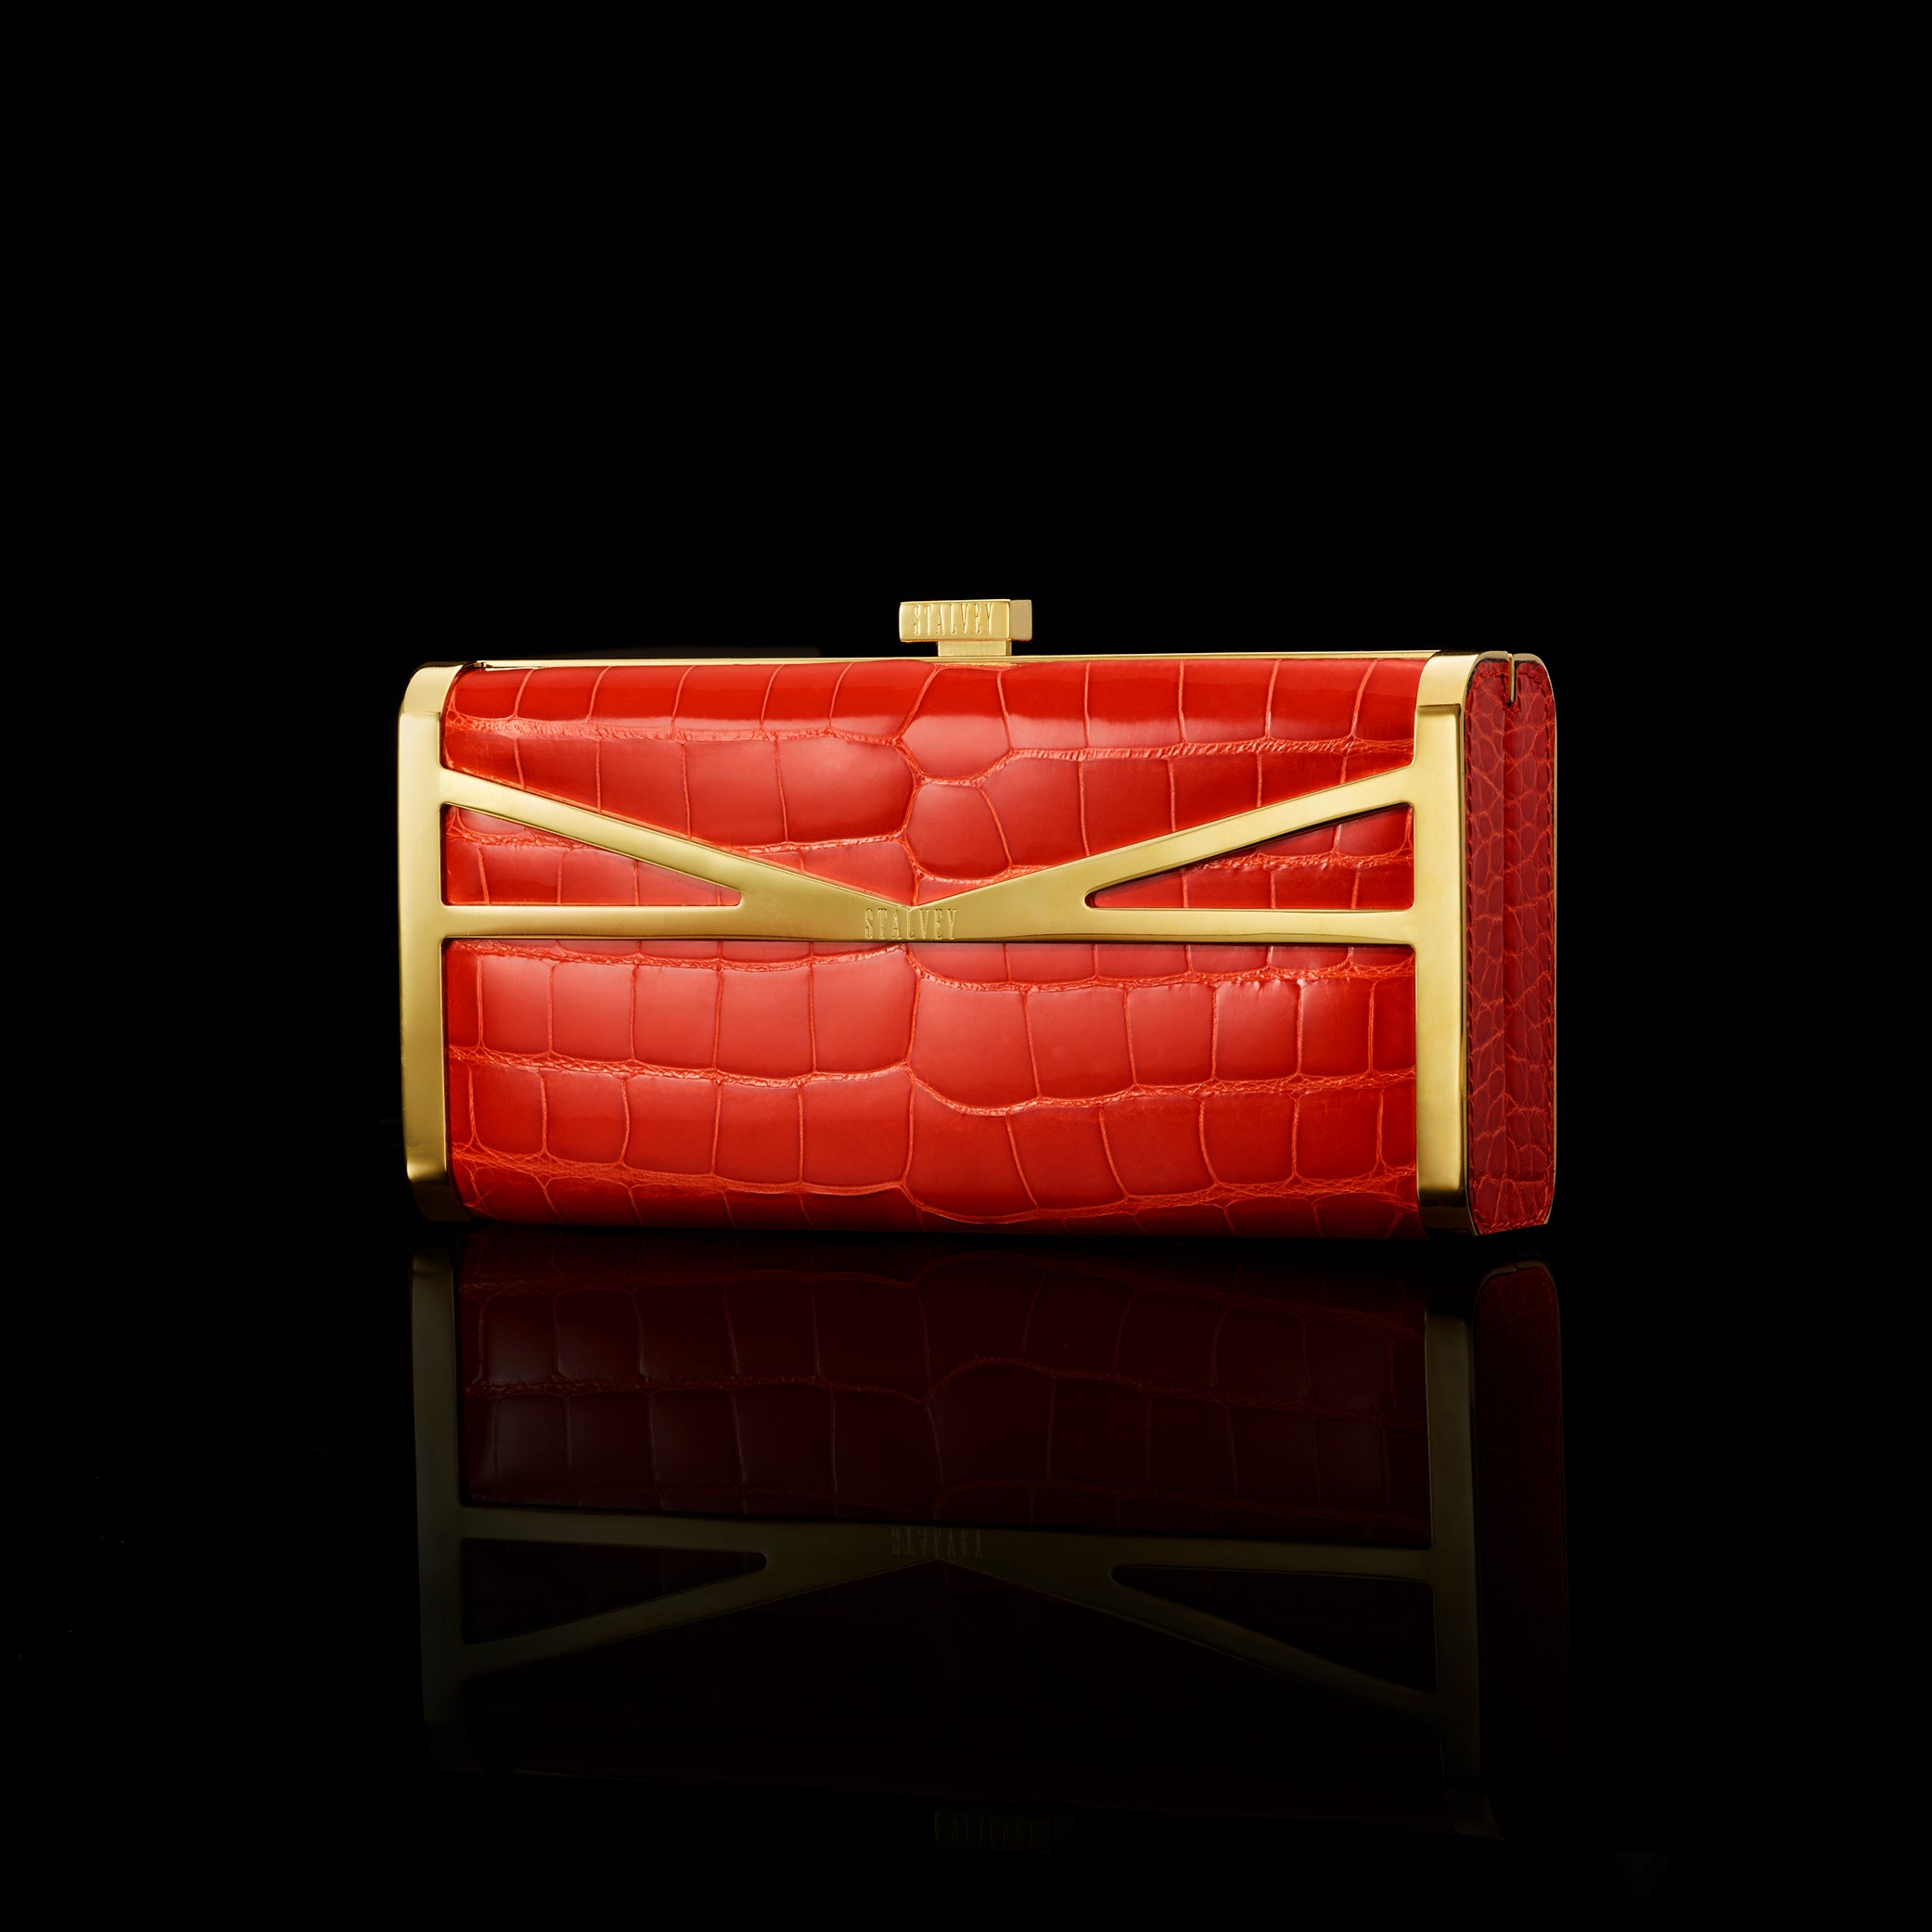 Stalvey bags are a supermodel favourite – Gigi Hadid carries Stalvey handbag